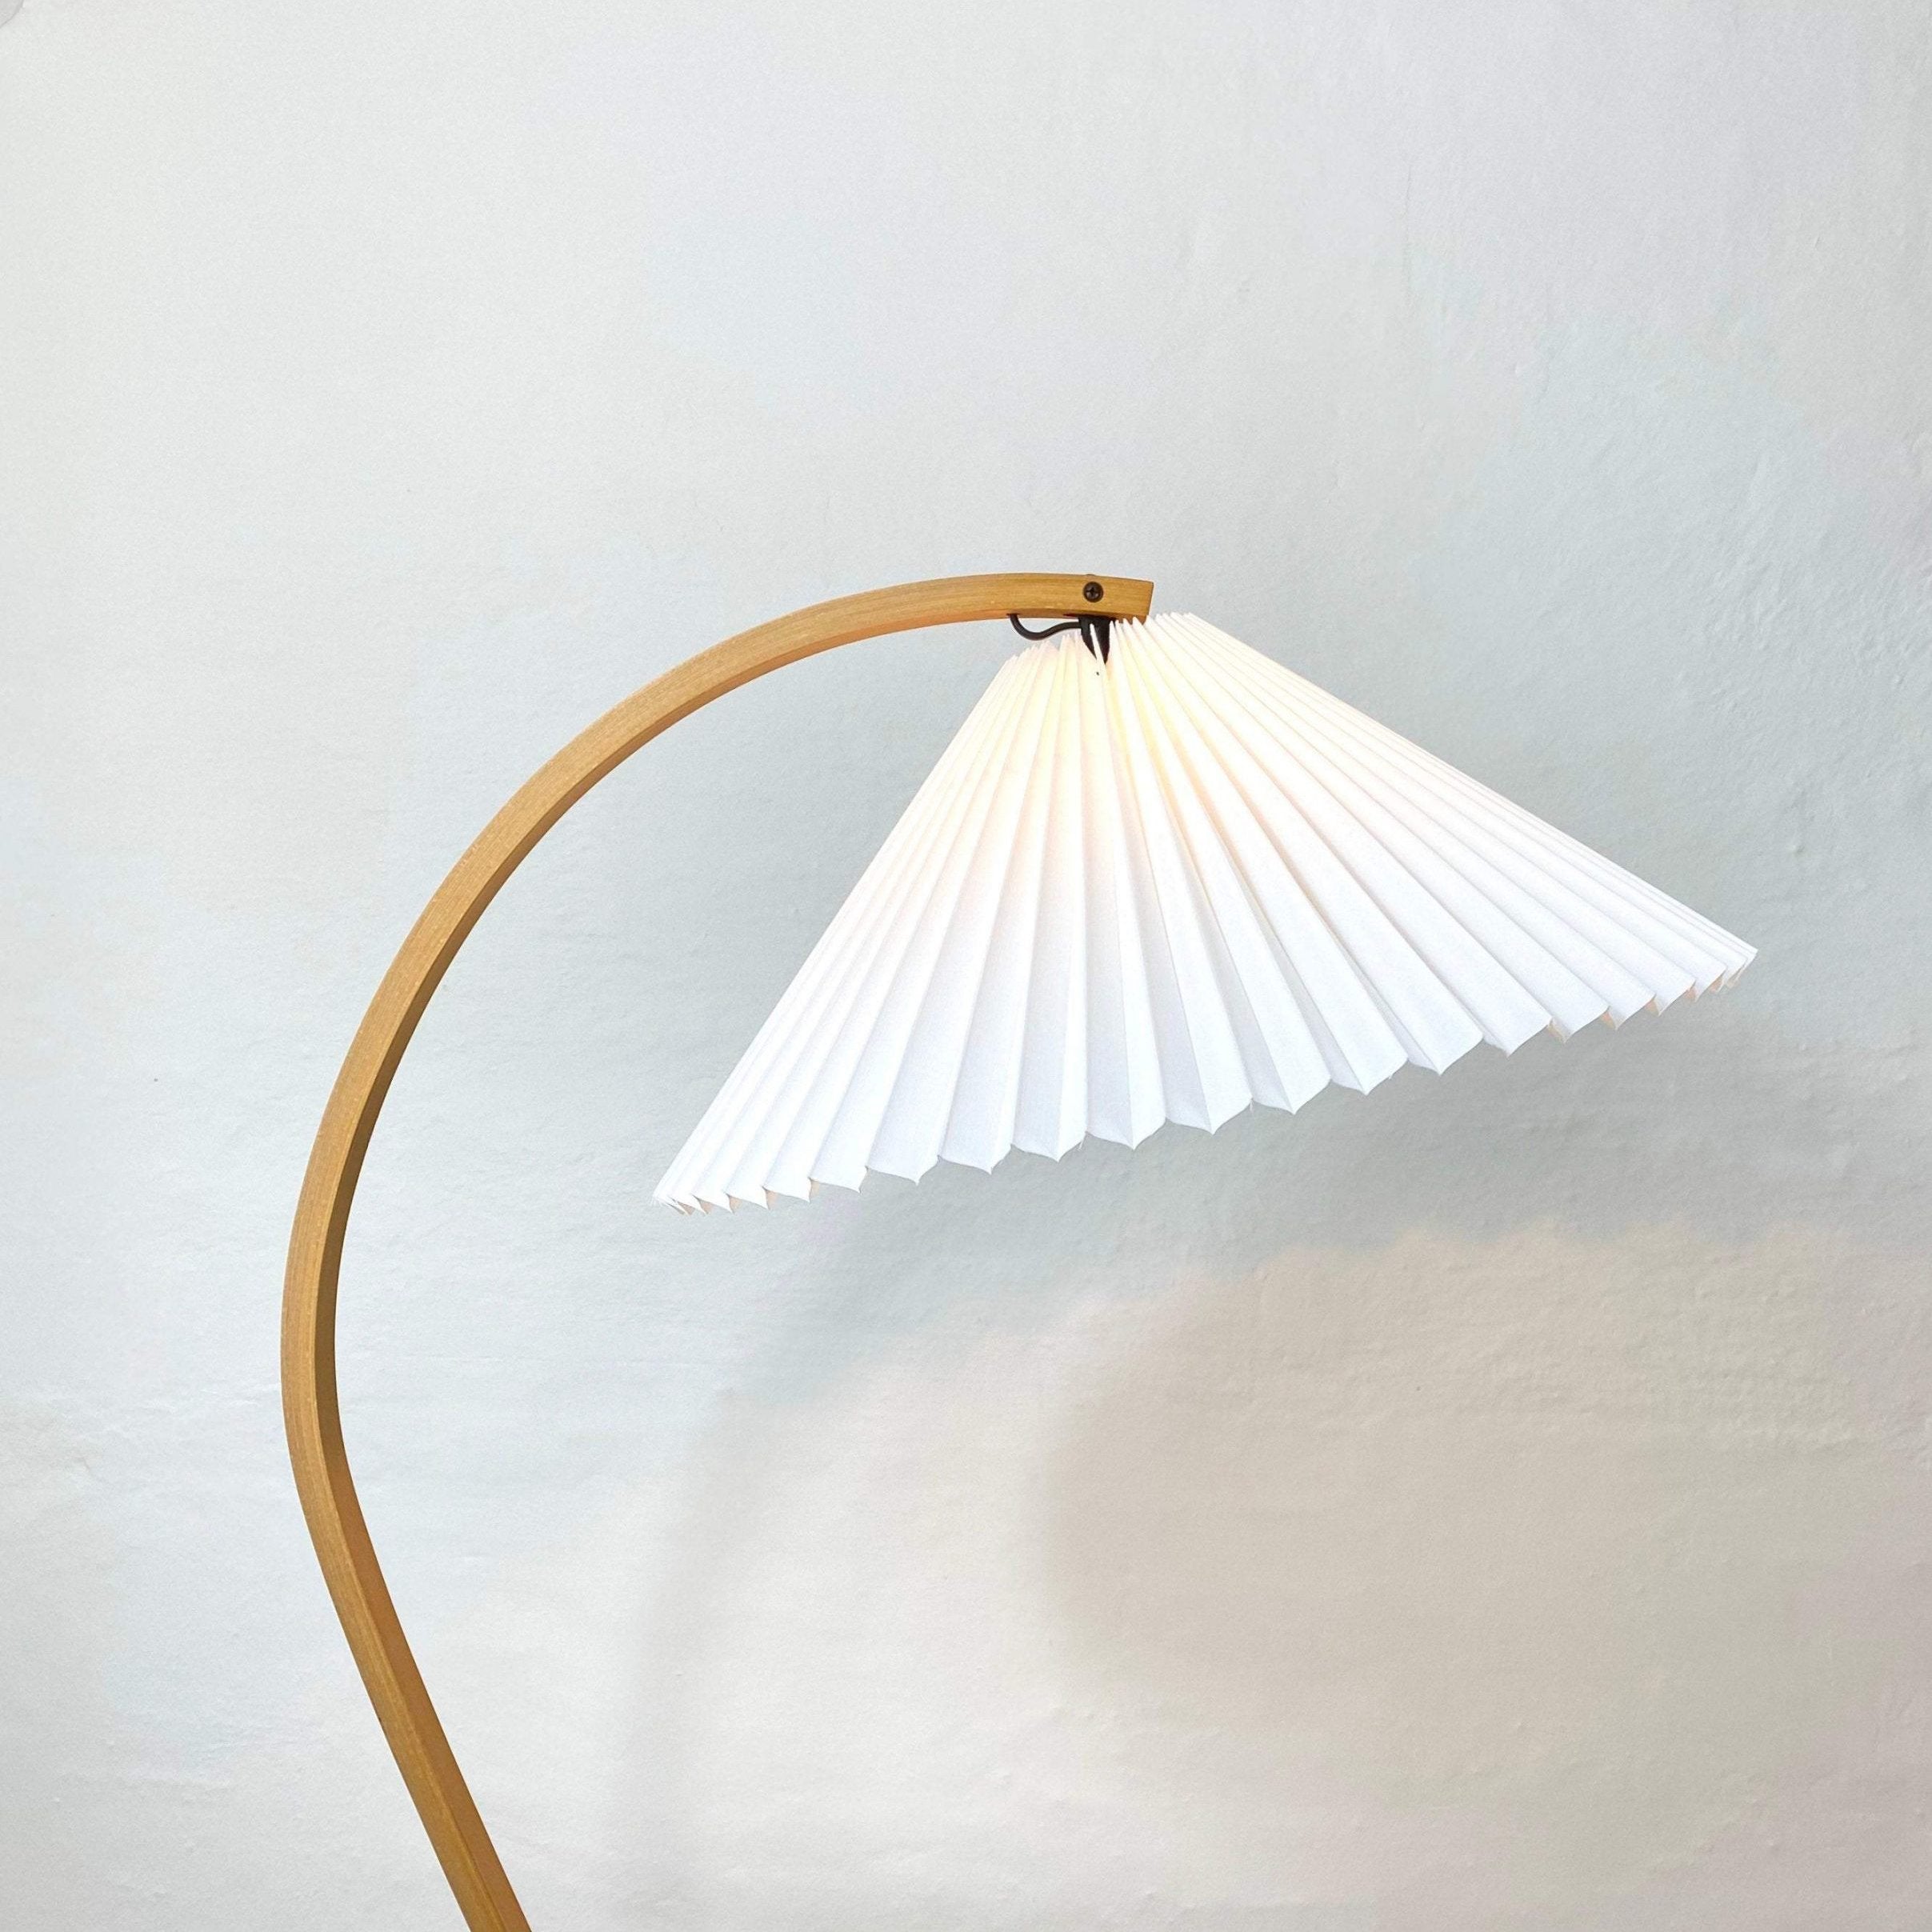 Lampe de table Caprani